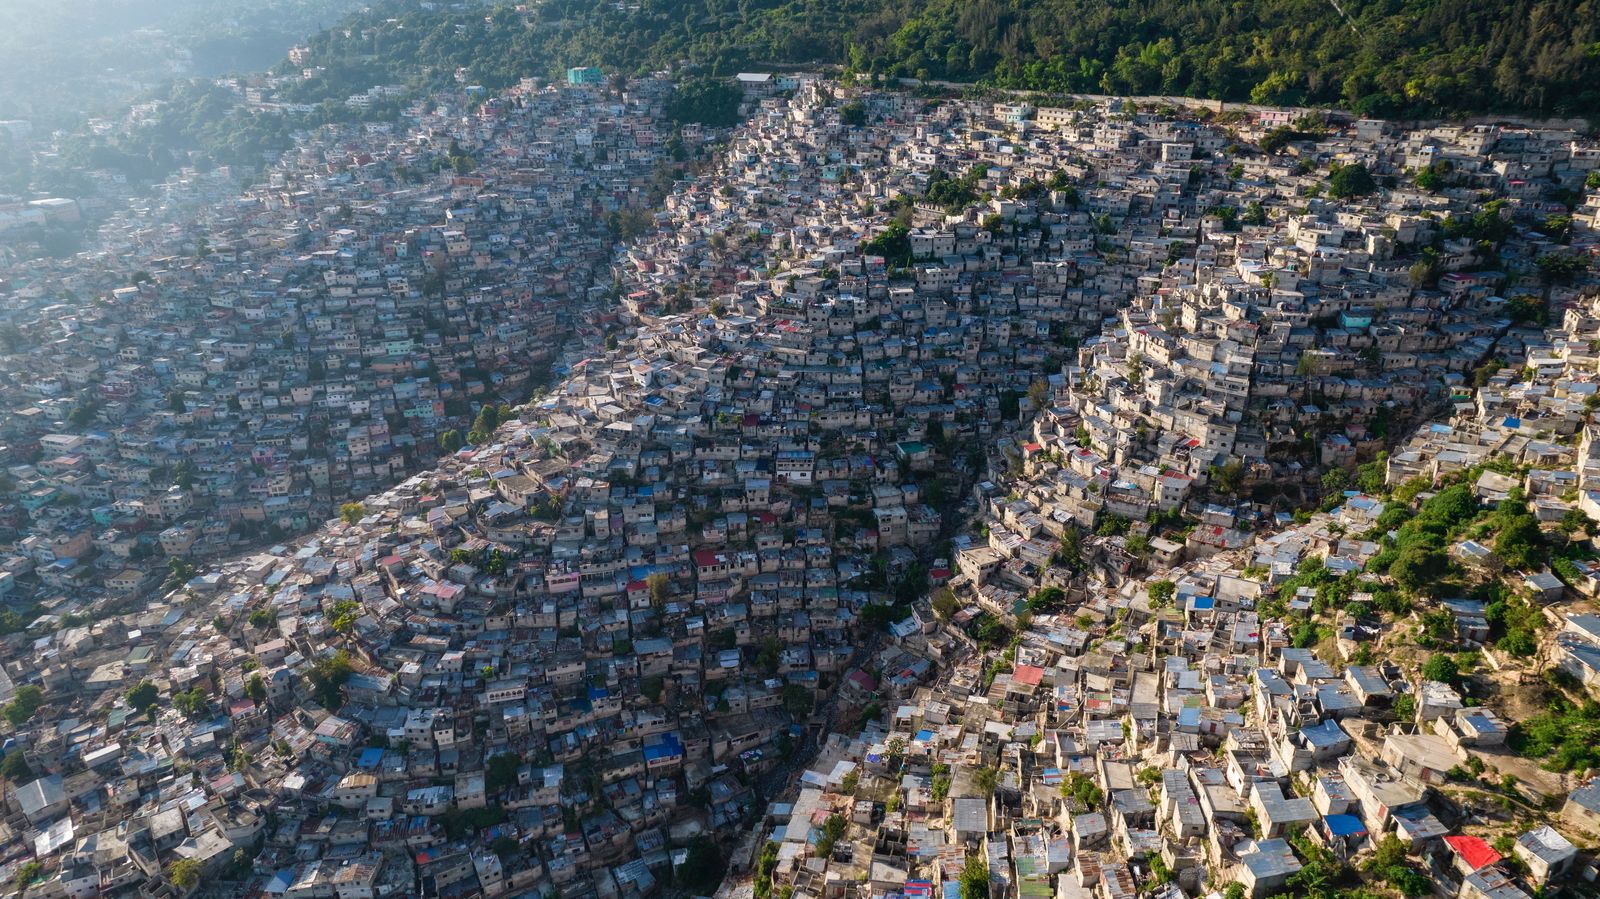 © RODRIGO ABD - A view of the densely populated Jalousie neighborhood of Port-au-Prince, Tuesday, Sept. 28, 2021.